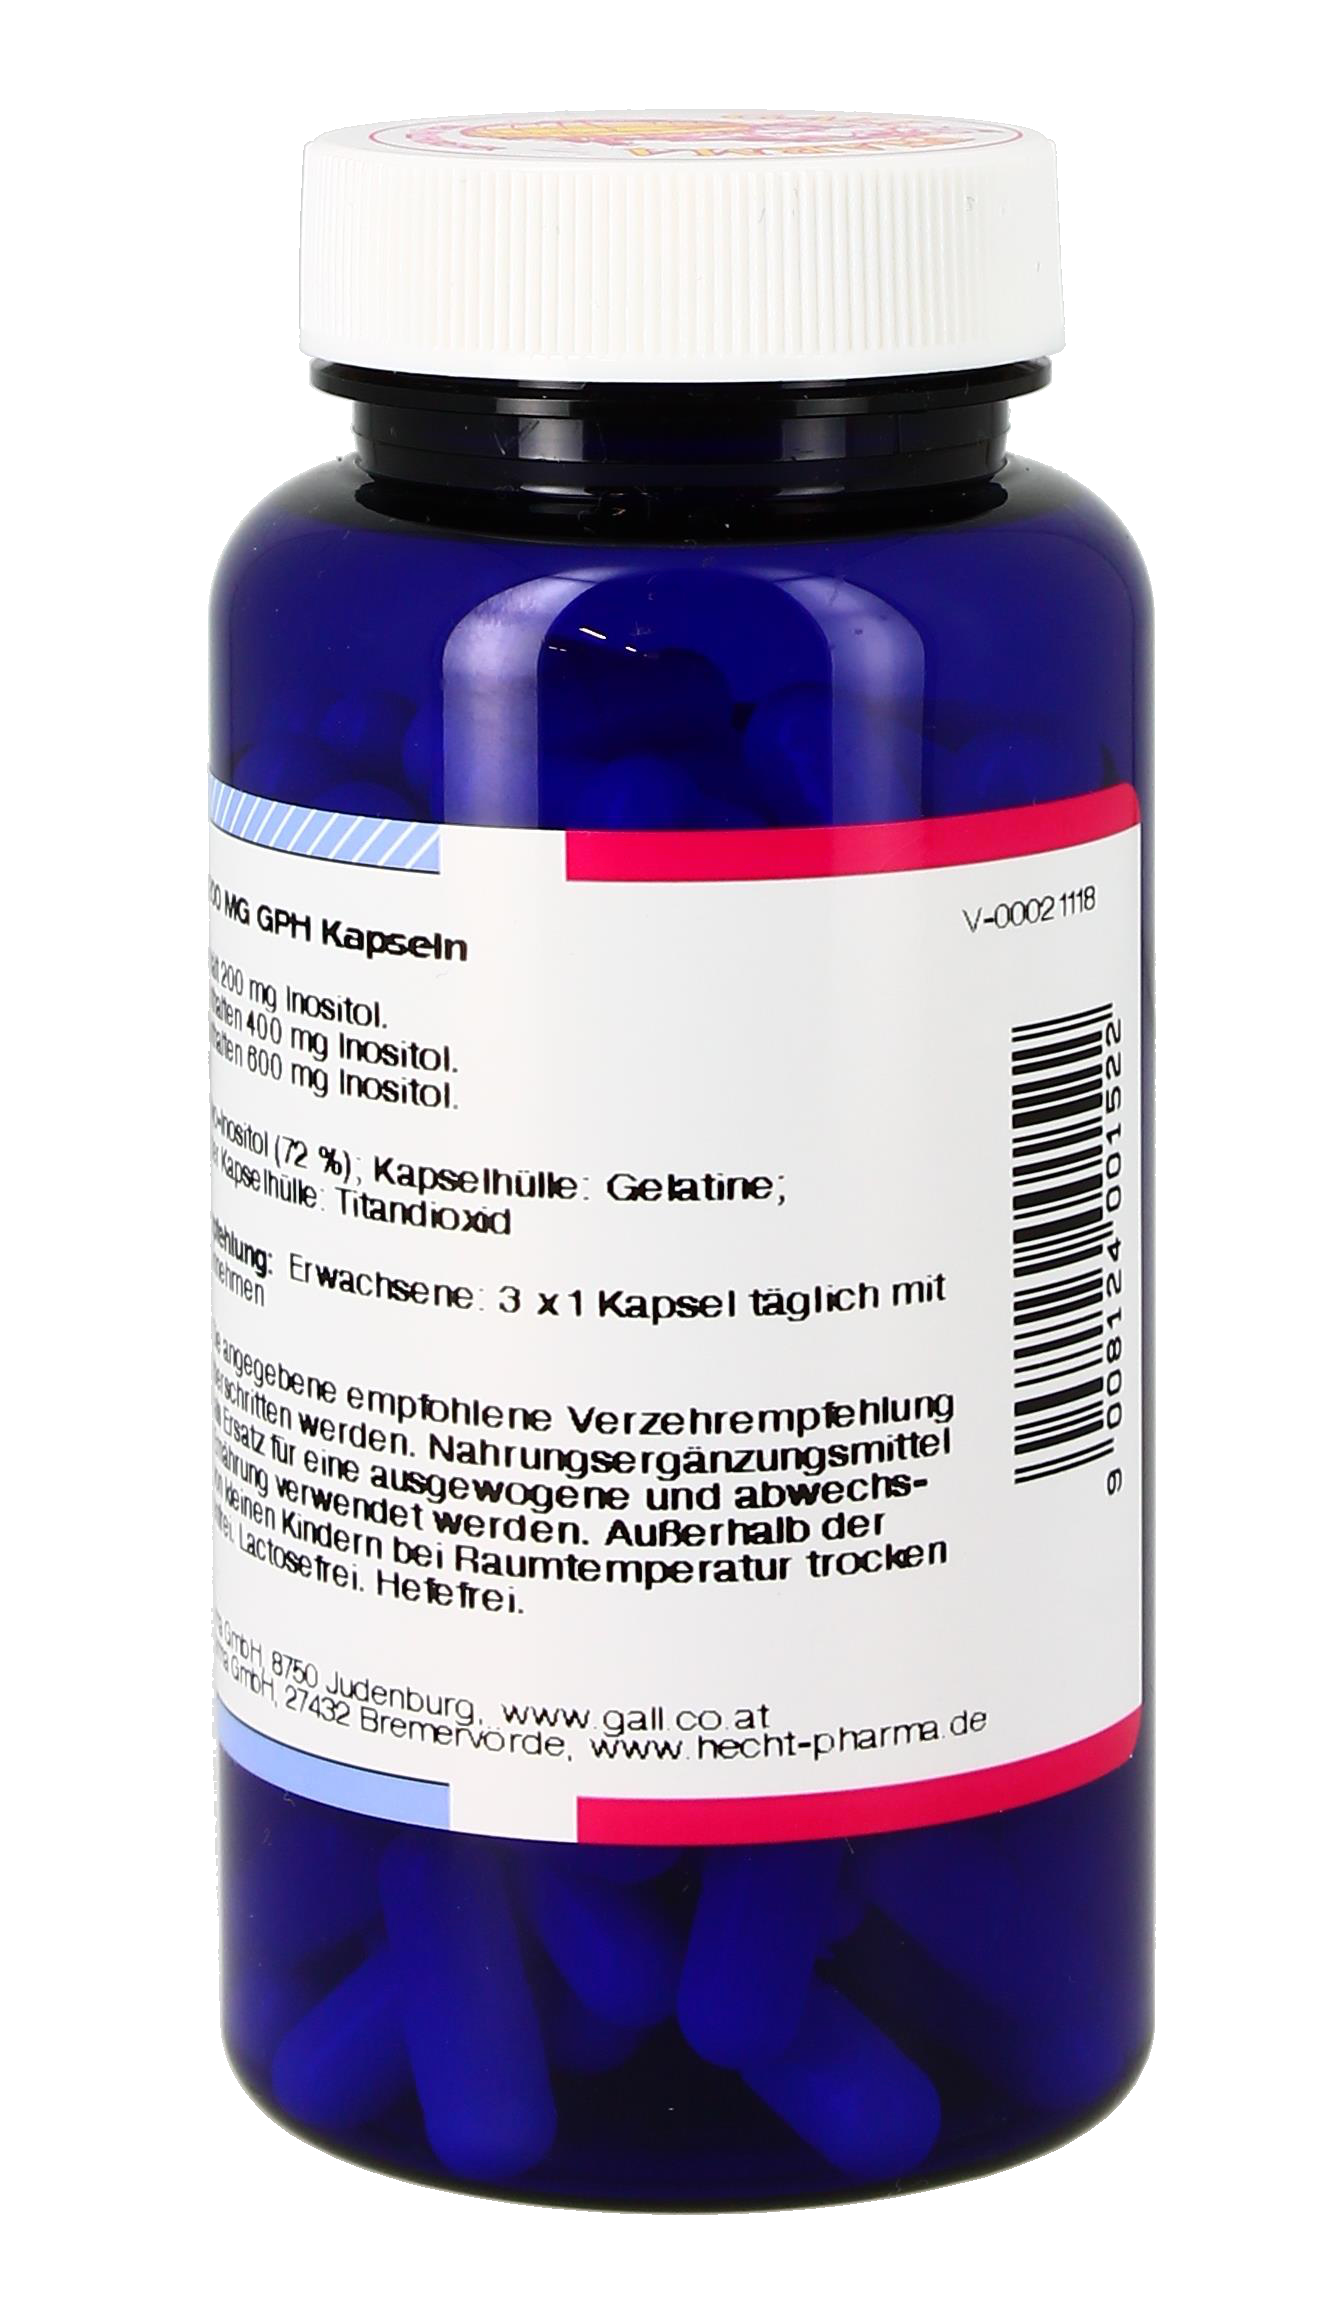 Inositol 200 mg GPH Kapseln